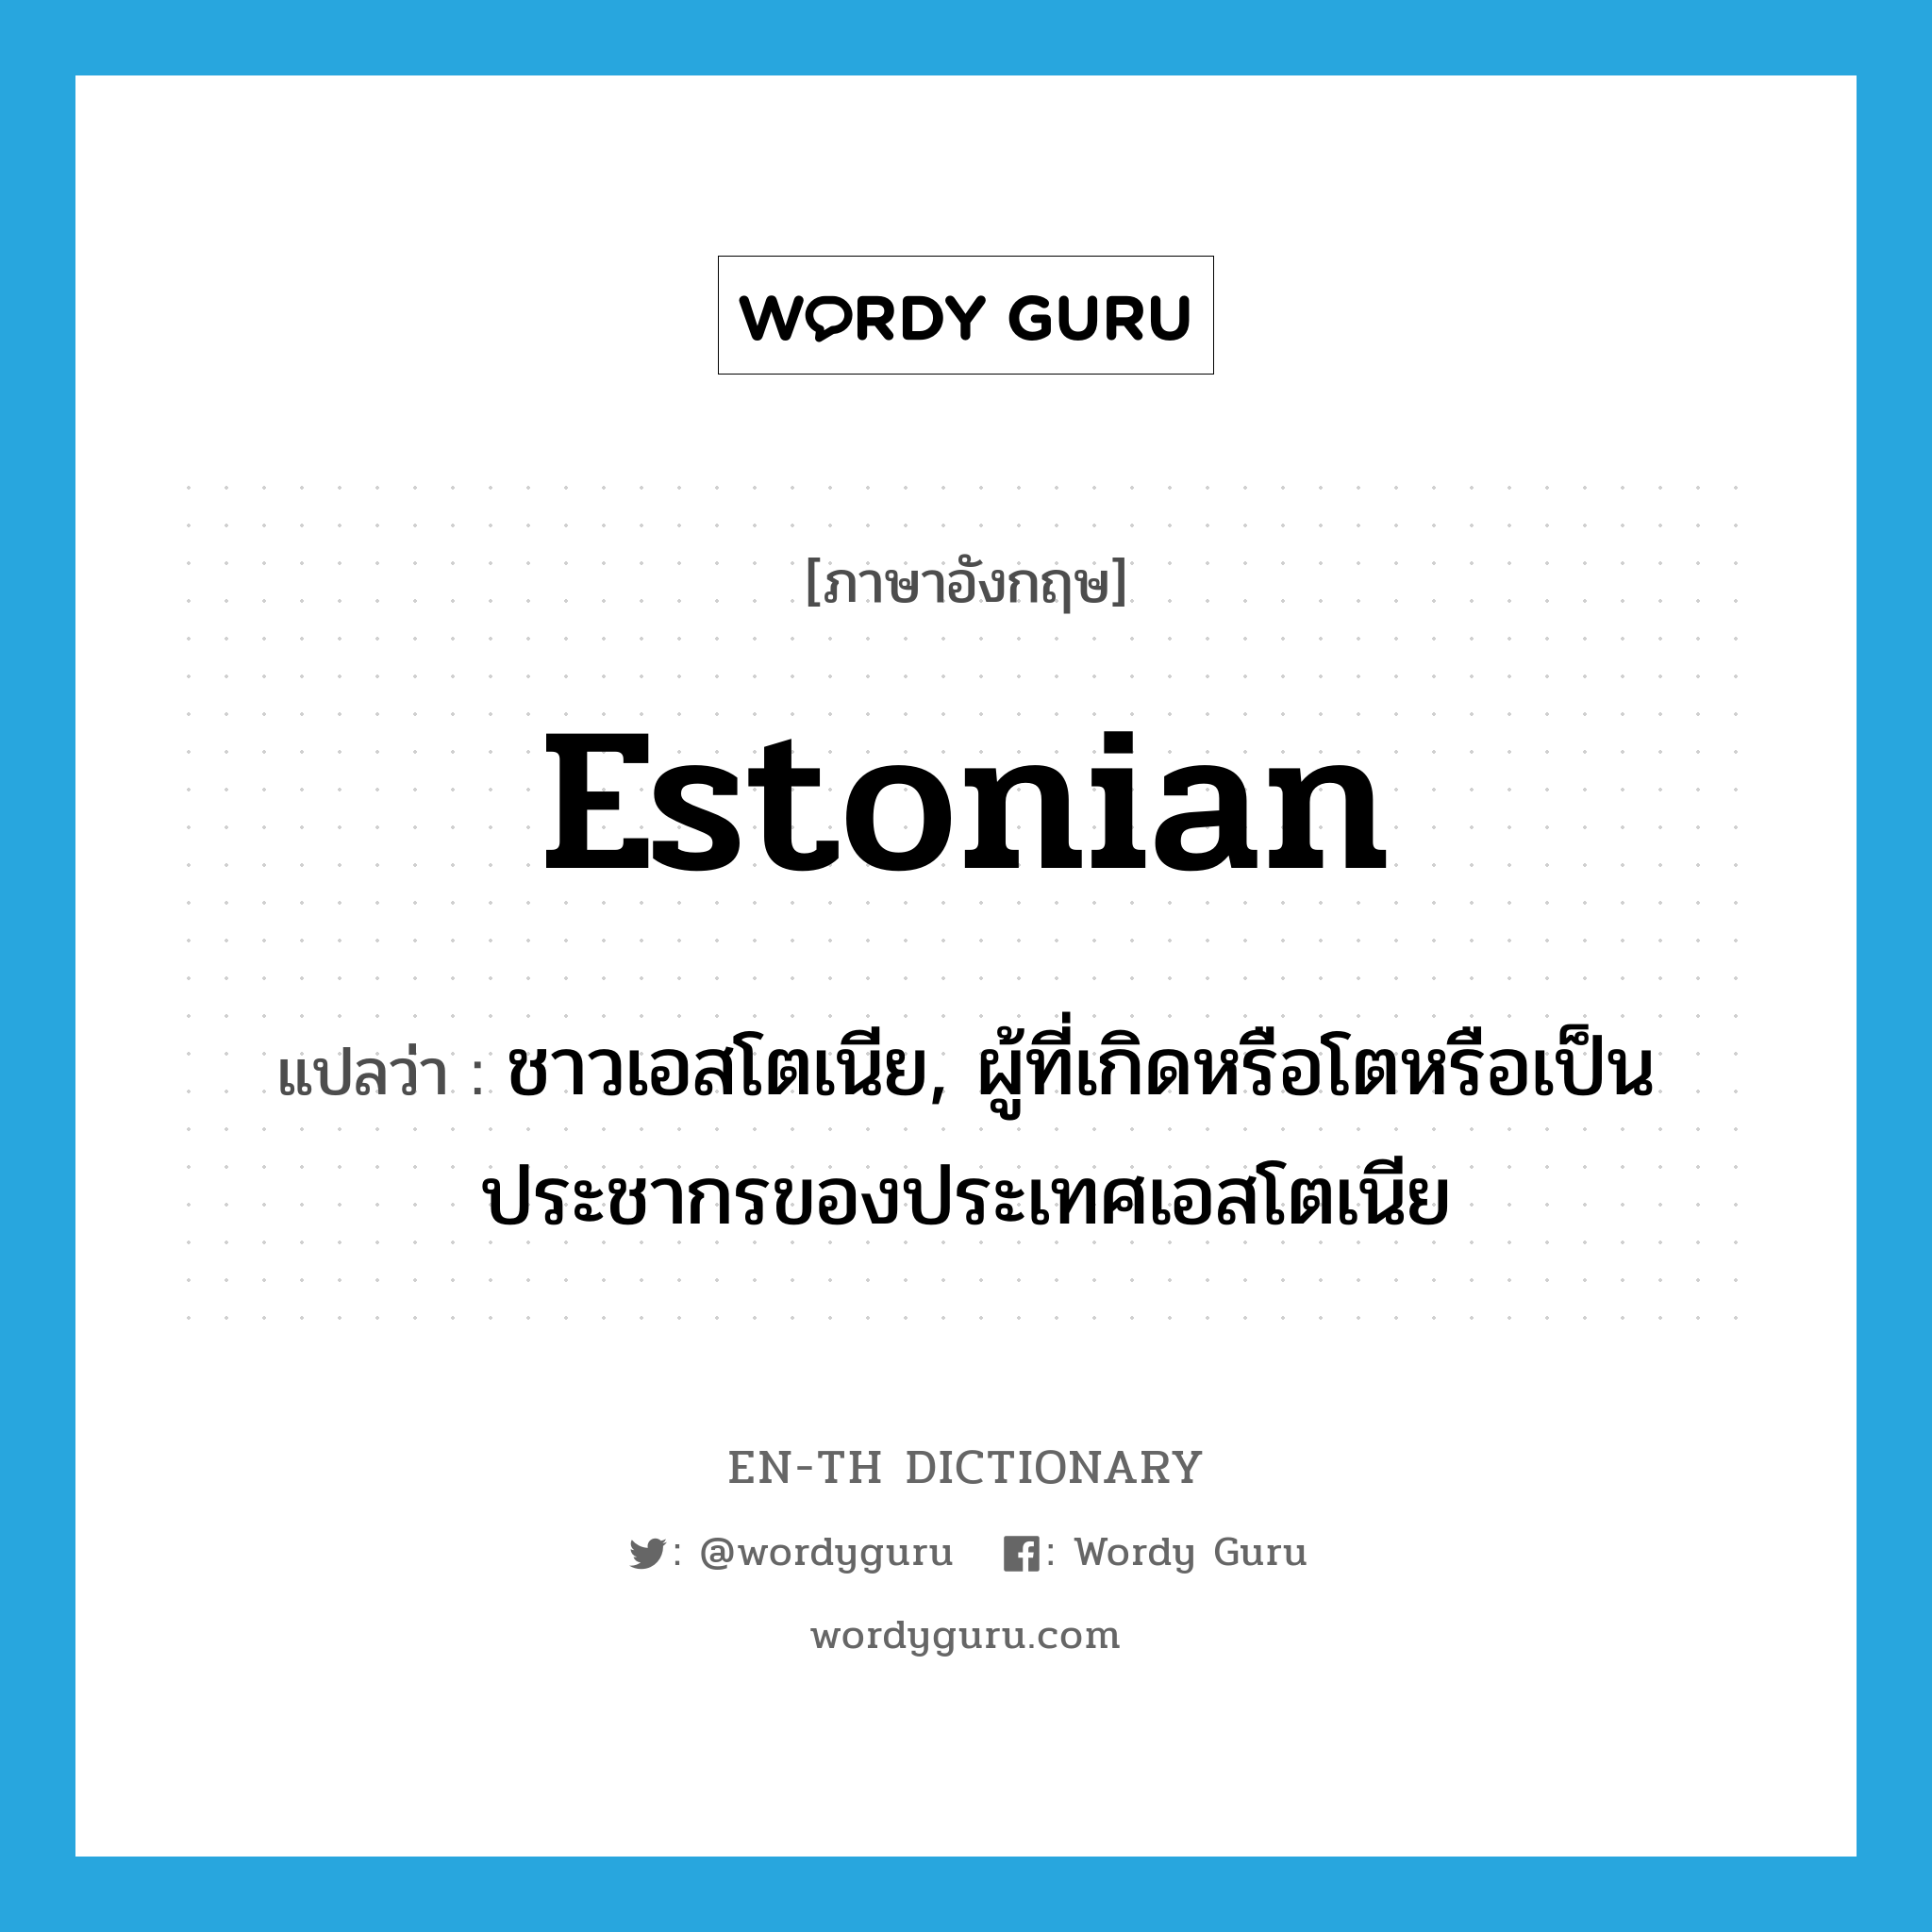 ชาวเอสโตเนีย, ผู้ที่เกิดหรือโตหรือเป็นประชากรของประเทศเอสโตเนีย ภาษาอังกฤษ?, คำศัพท์ภาษาอังกฤษ ชาวเอสโตเนีย, ผู้ที่เกิดหรือโตหรือเป็นประชากรของประเทศเอสโตเนีย แปลว่า Estonian ประเภท N หมวด N